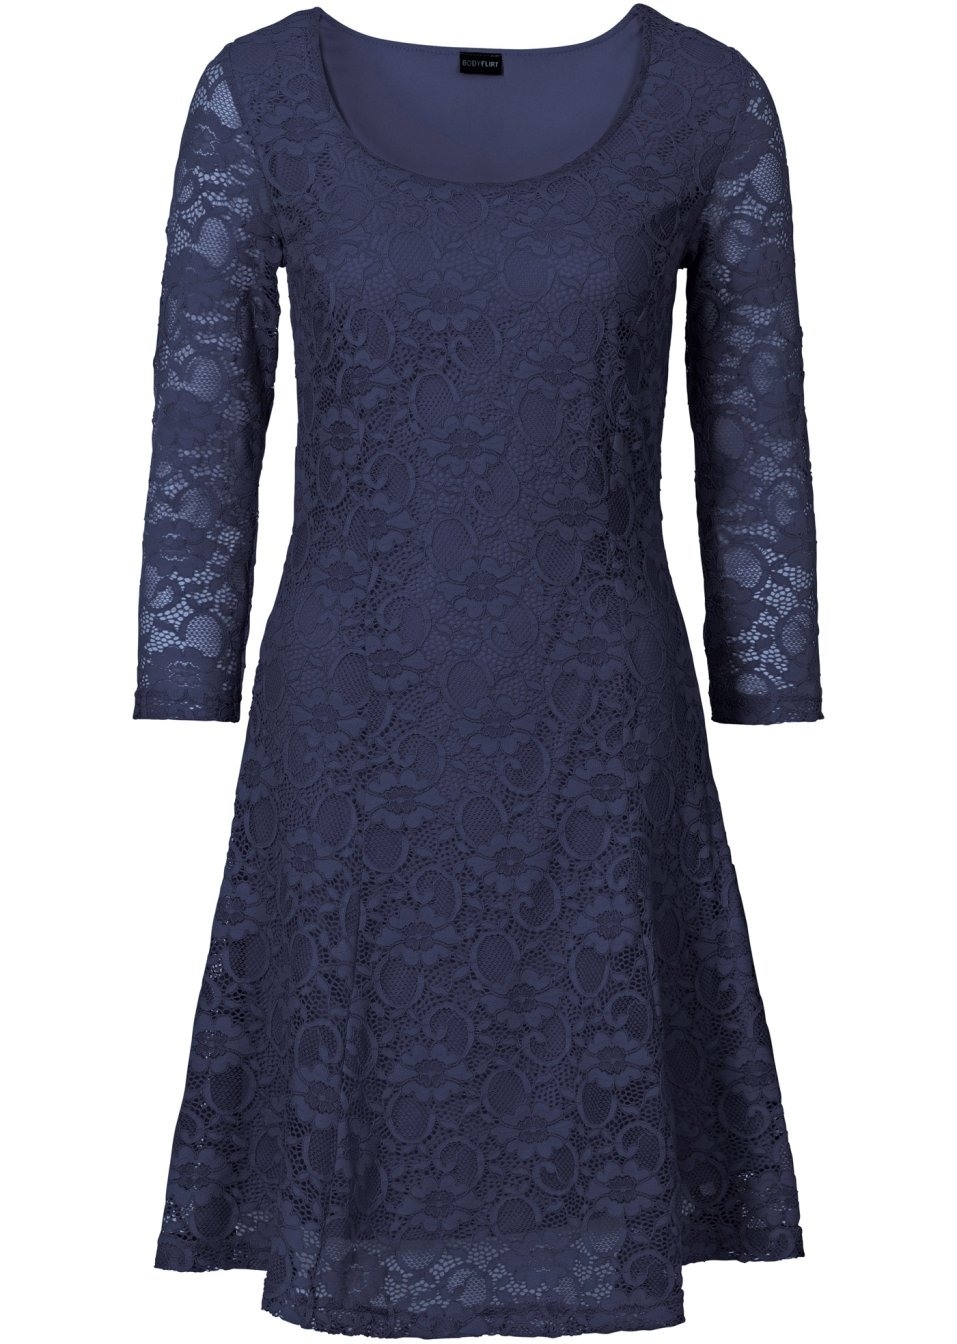 10 Luxurius Blaues Kleid Mit Spitze Ärmel20 Kreativ Blaues Kleid Mit Spitze Galerie